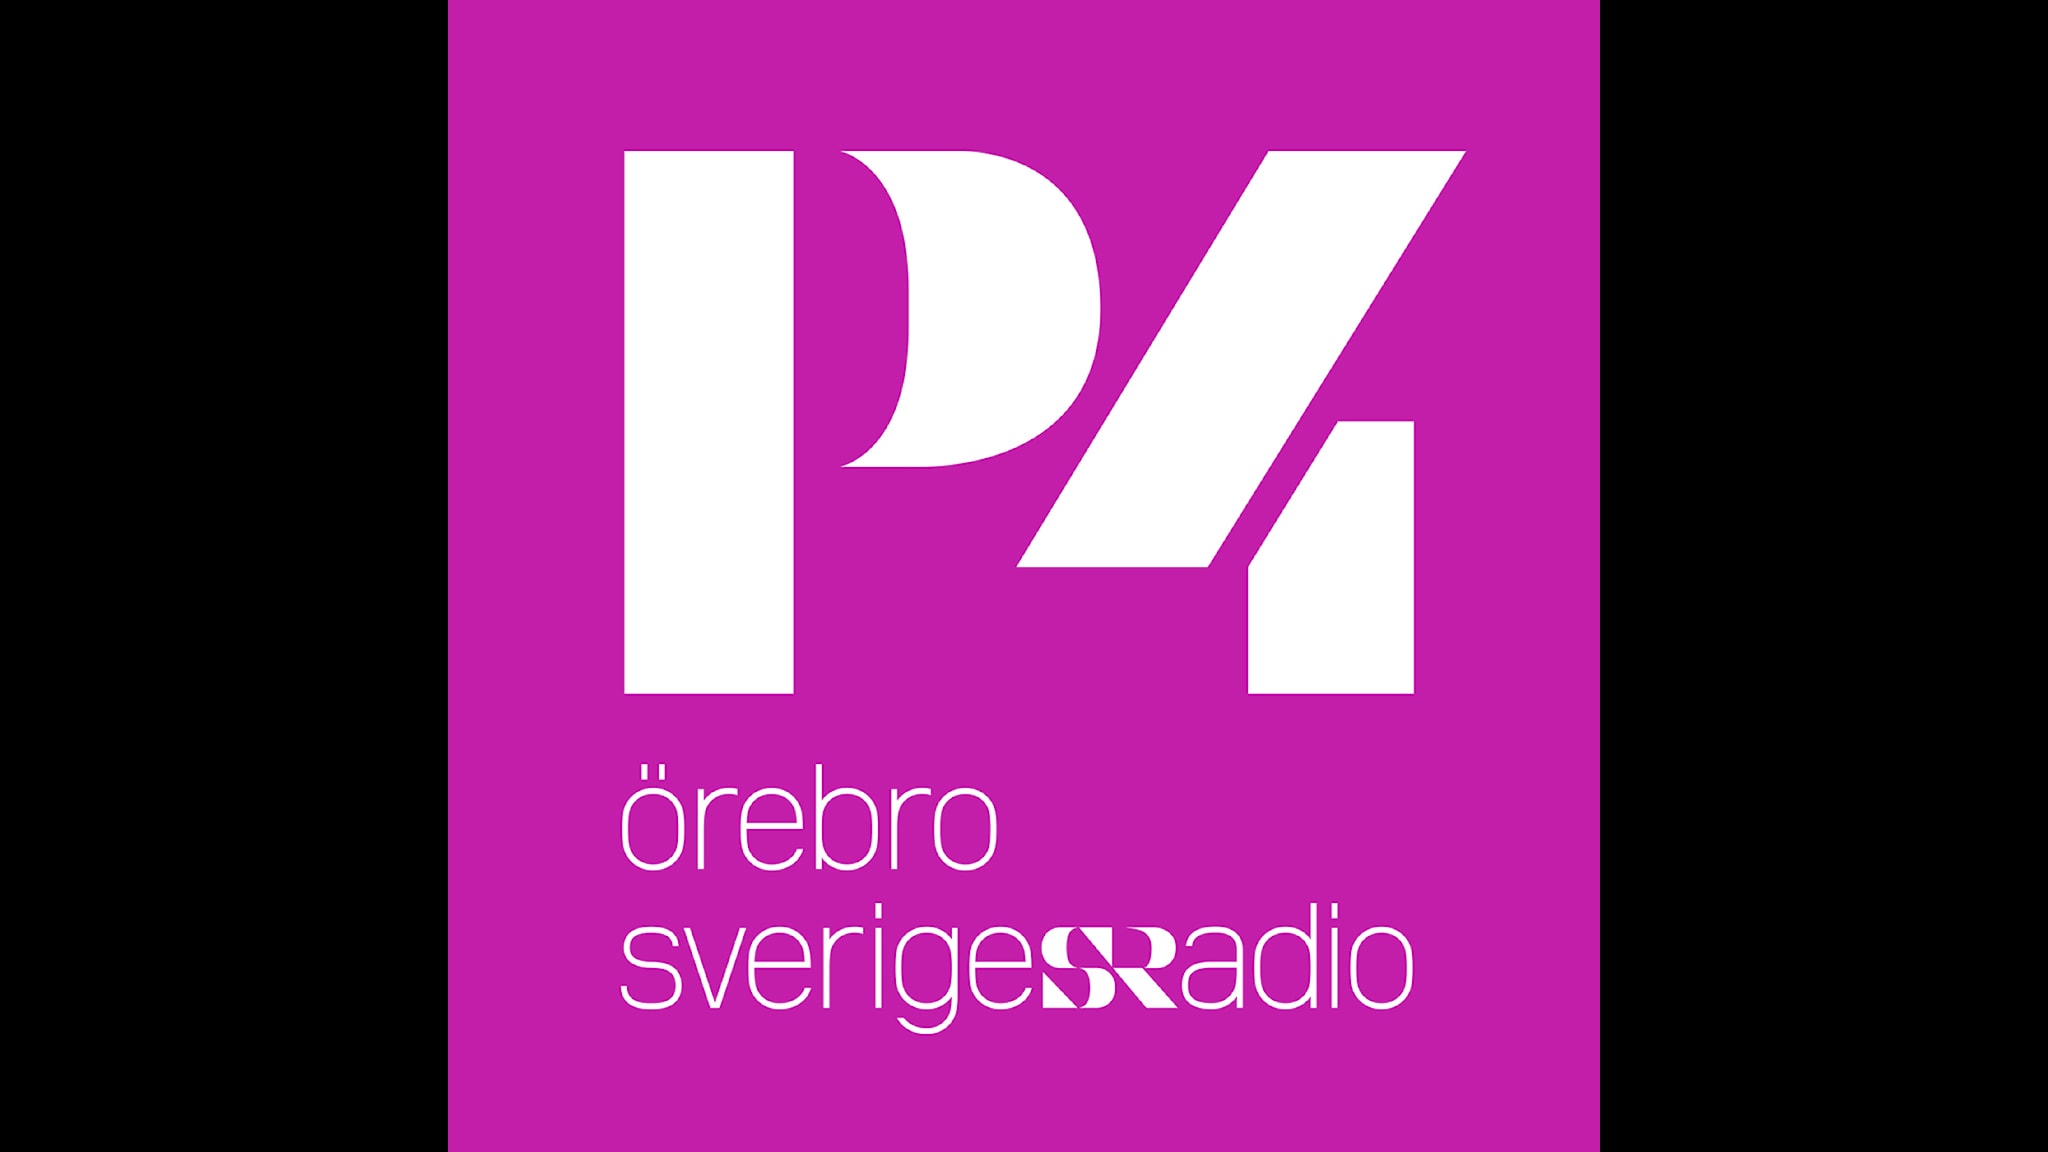 Sveriges Radio P4 Örebro